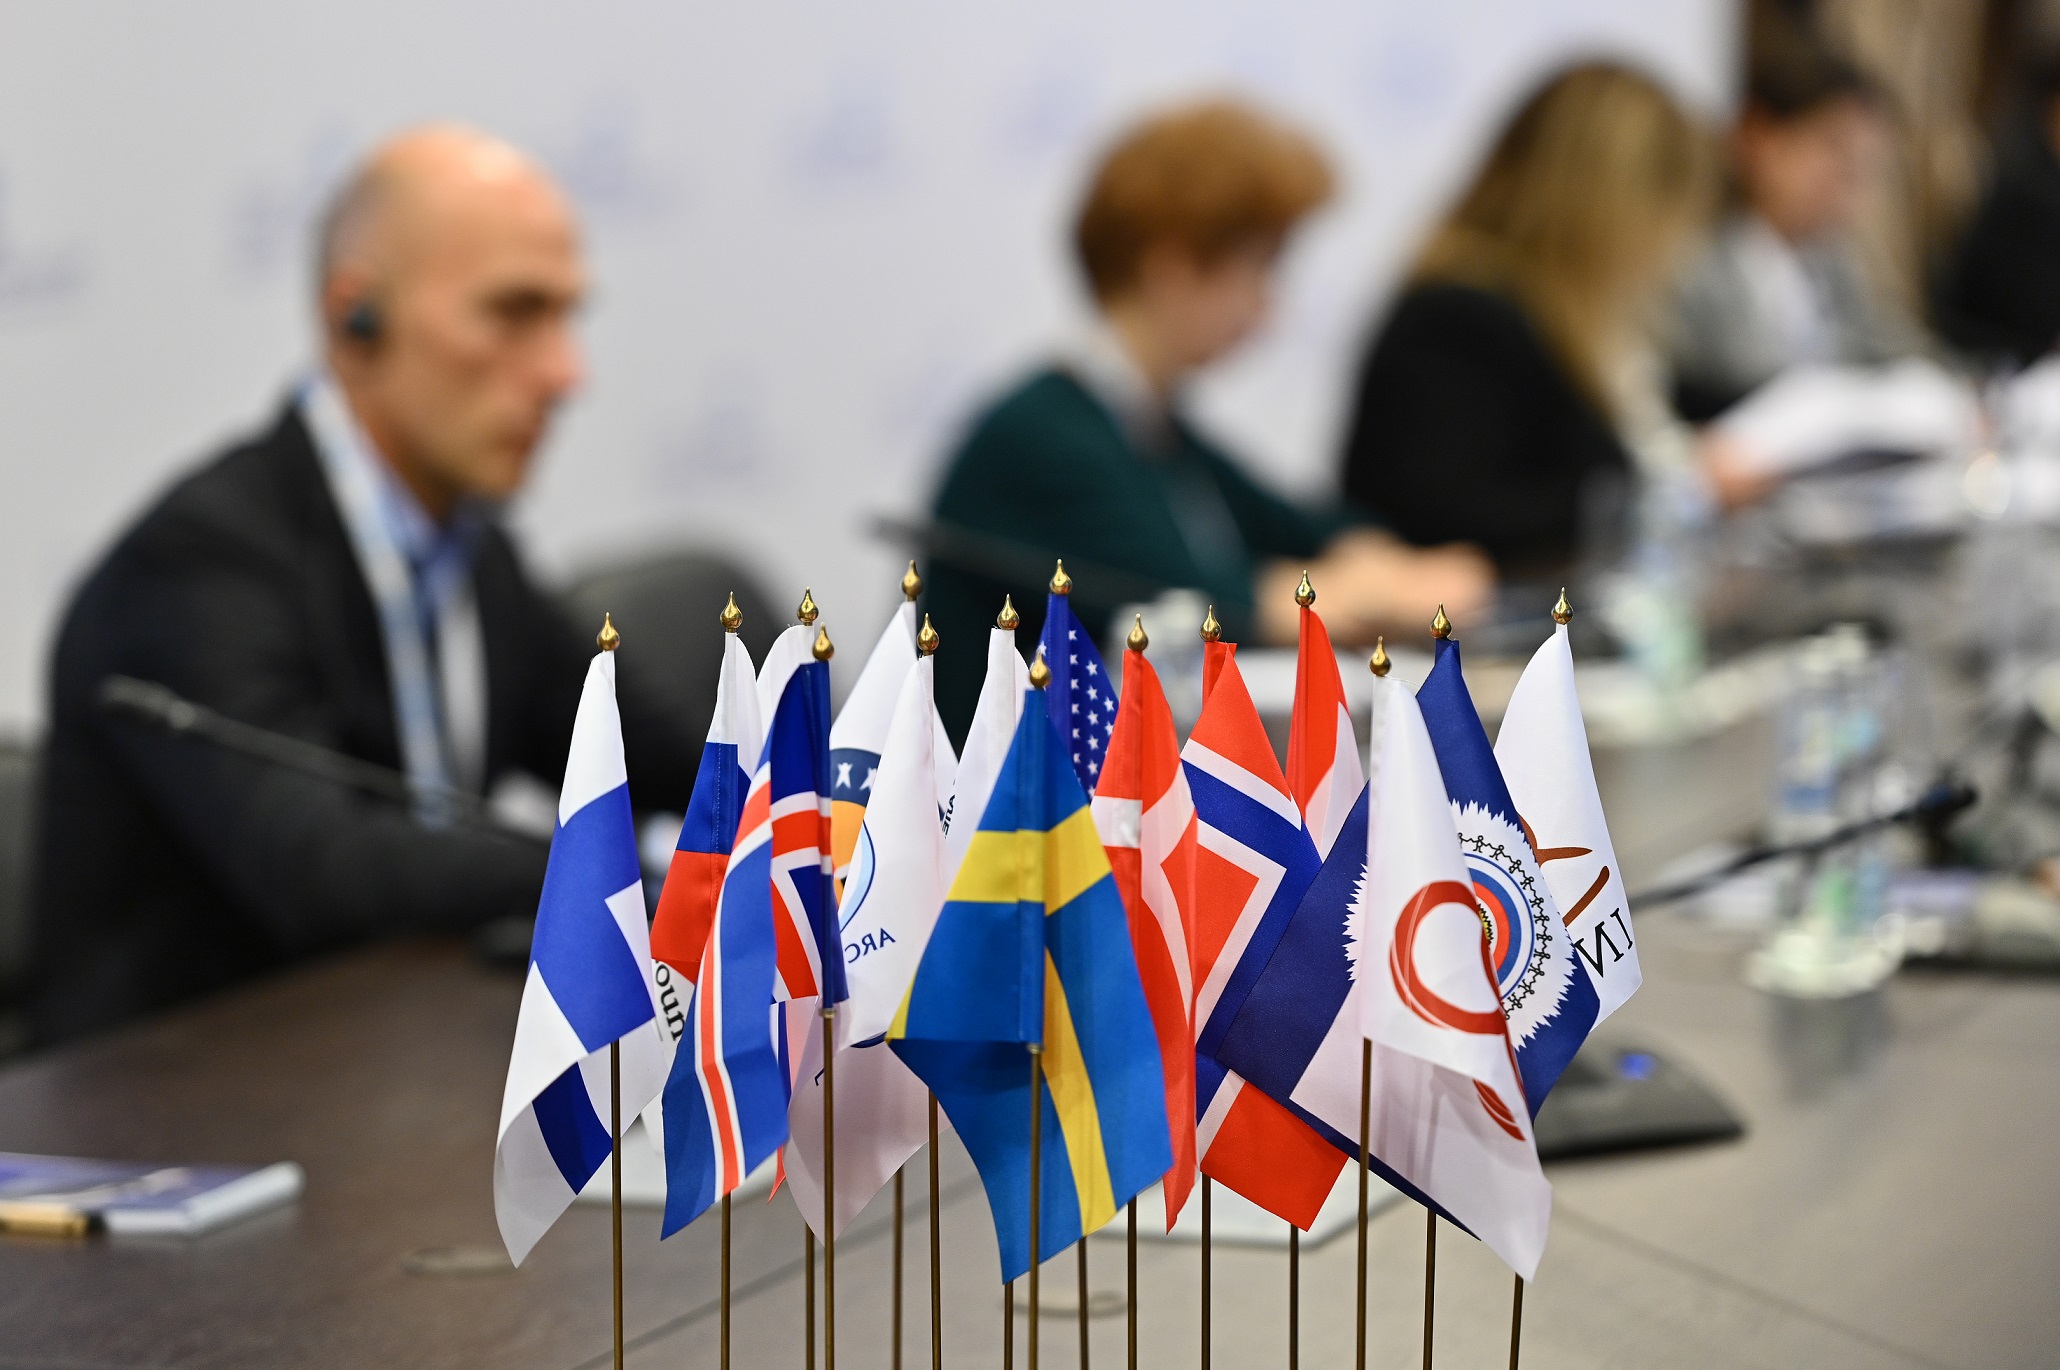 Первое пленарное заседание Арктического совета под председательством РФ пройдет в Салехарде